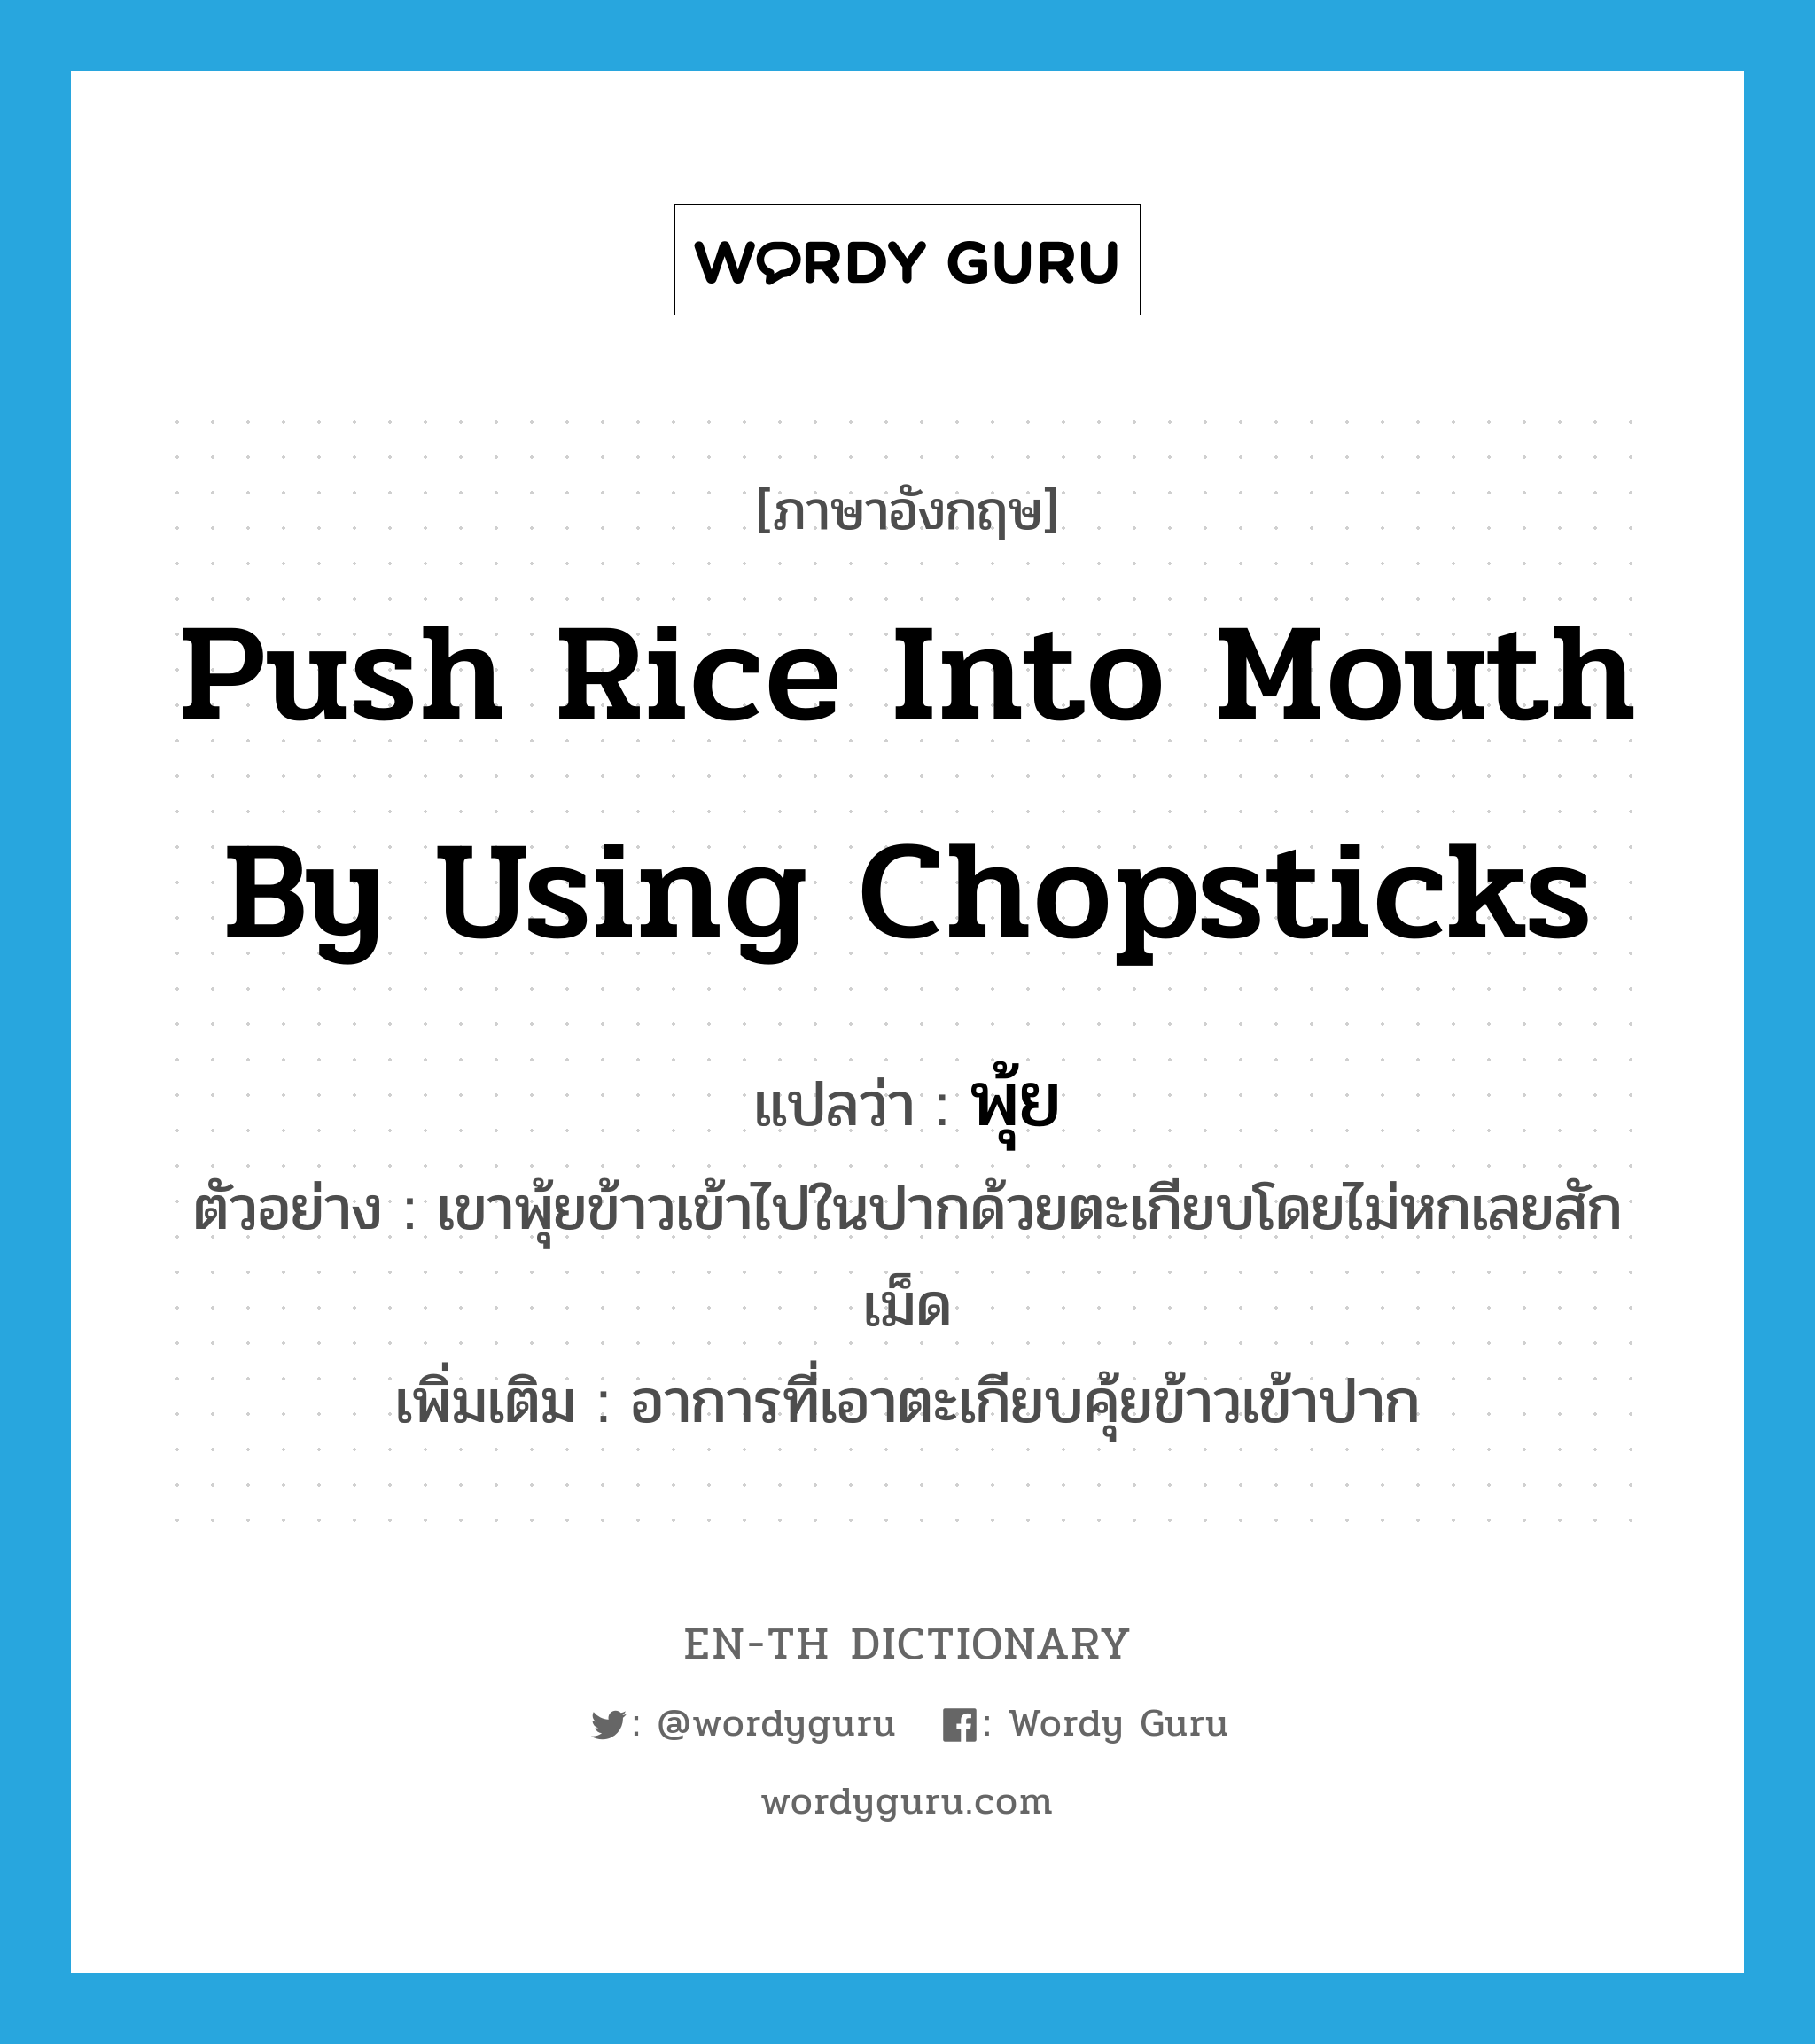 พุ้ย ภาษาอังกฤษ?, คำศัพท์ภาษาอังกฤษ พุ้ย แปลว่า push rice into mouth by using chopsticks ประเภท V ตัวอย่าง เขาพุ้ยข้าวเข้าไปในปากด้วยตะเกียบโดยไม่หกเลยสักเม็ด เพิ่มเติม อาการที่เอาตะเกียบคุ้ยข้าวเข้าปาก หมวด V